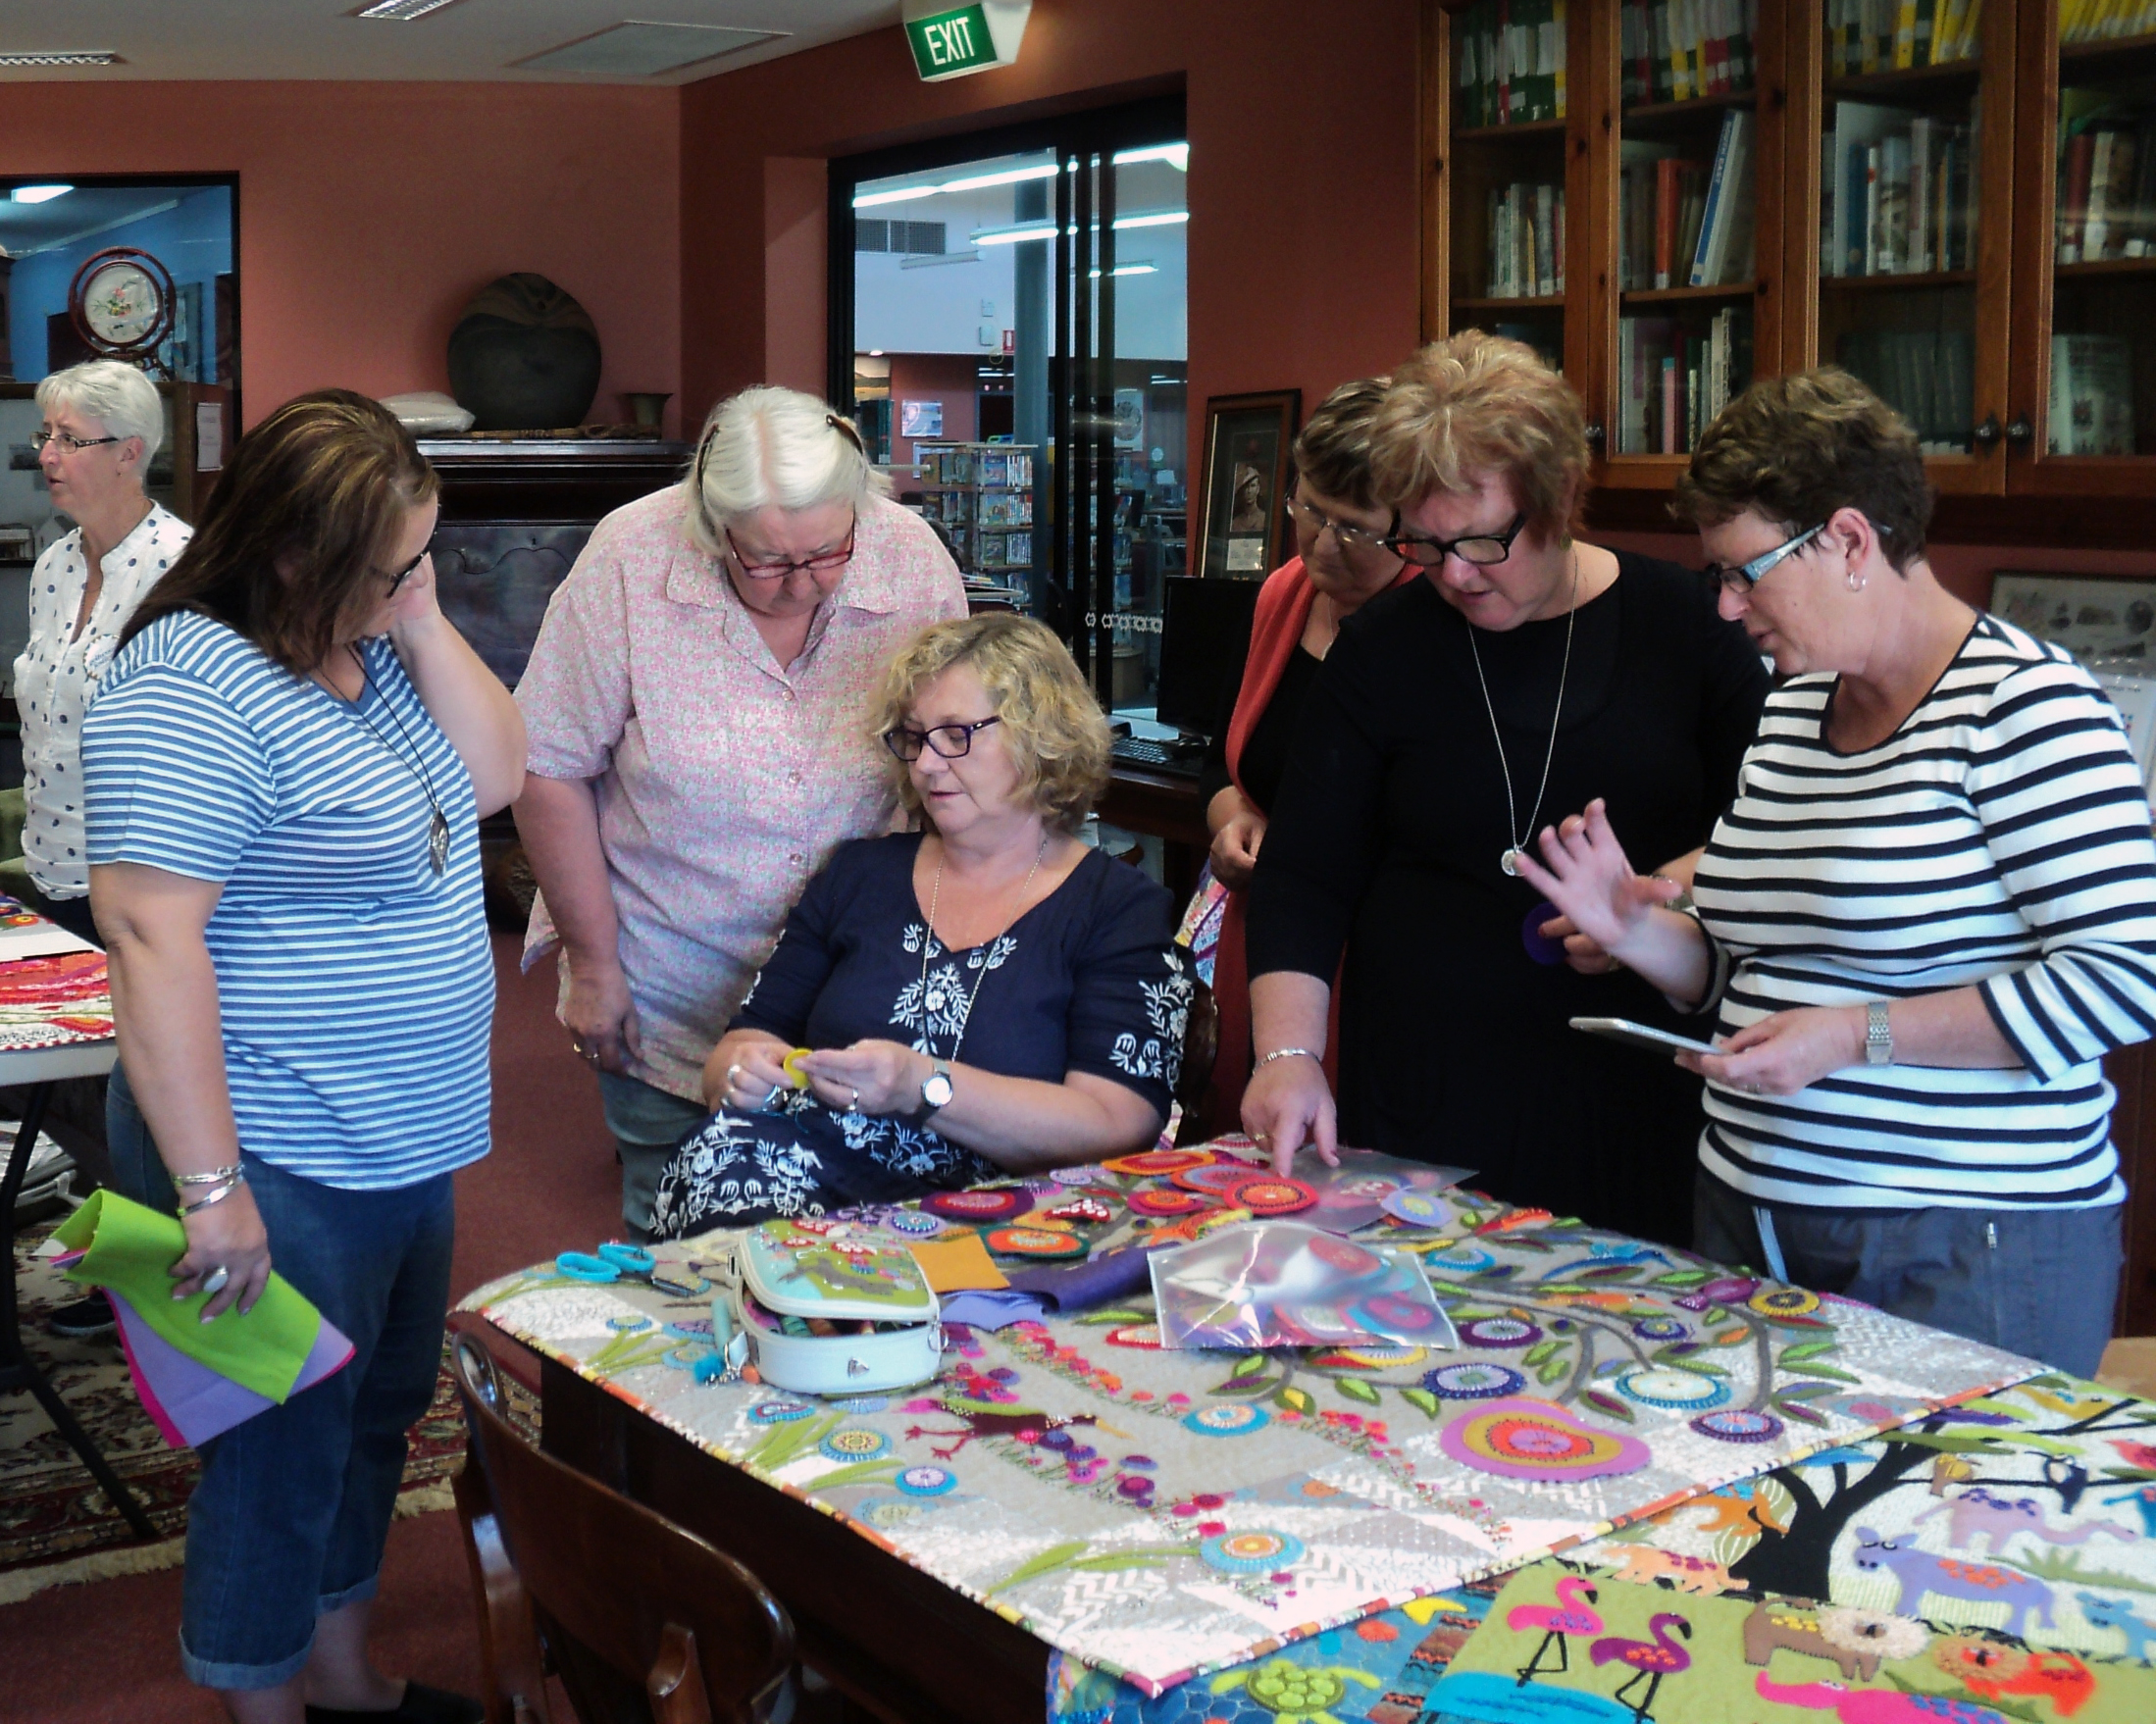 Ladies gathered around a patchwork quilt